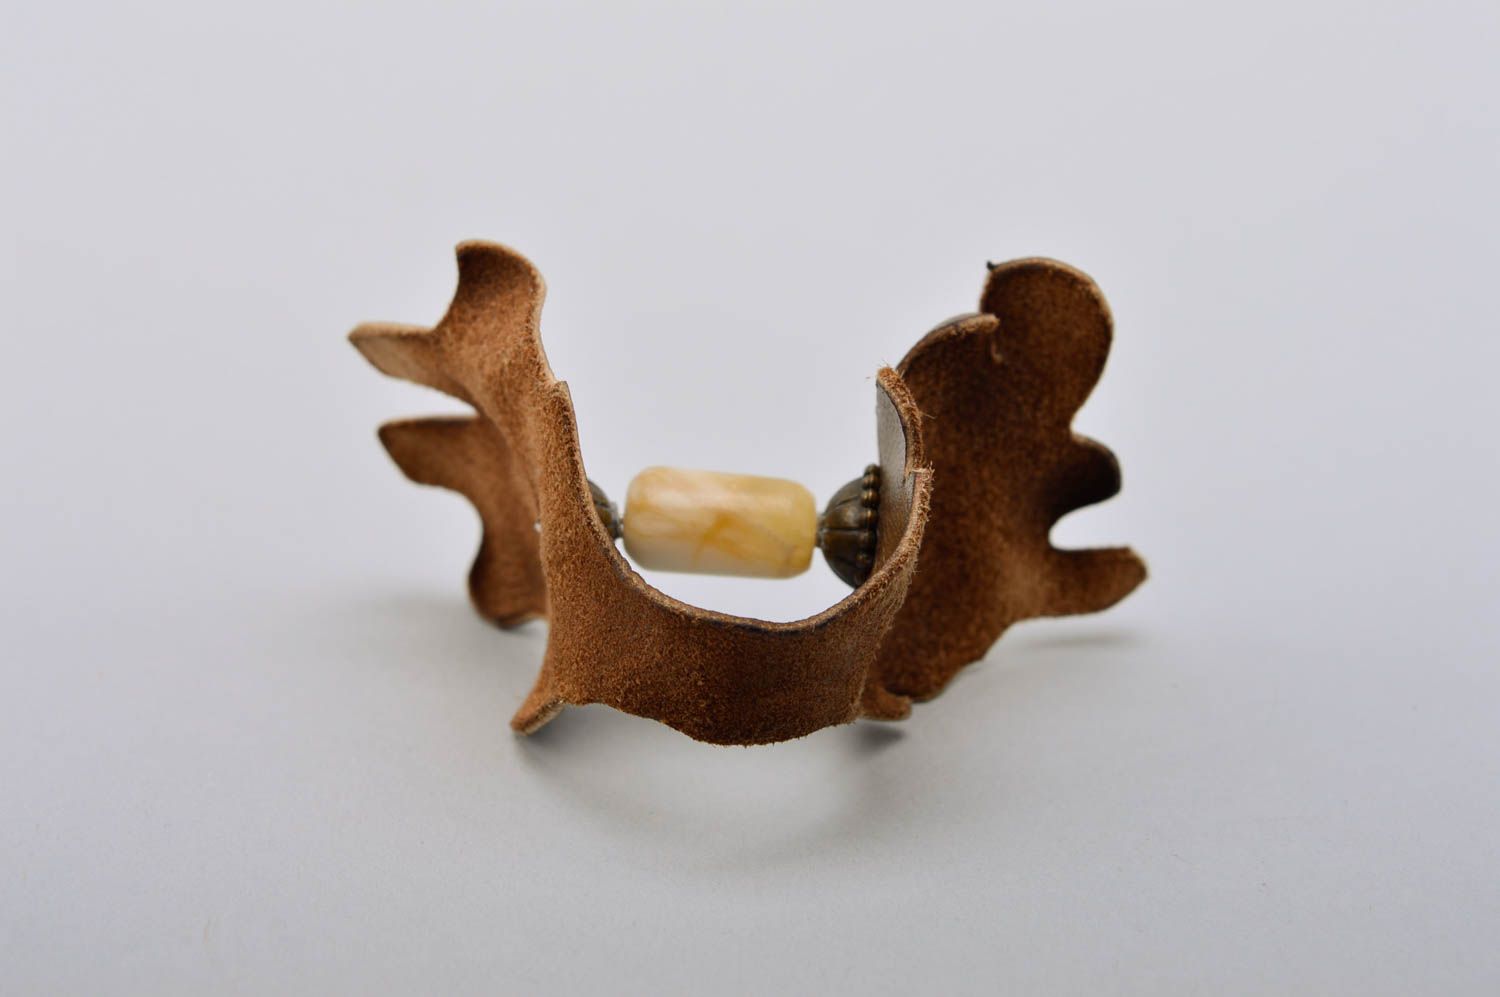 Кольцо из кожи ручной работы кожаный аксессуар бижутерия из кожи модное кольцо  фото 3